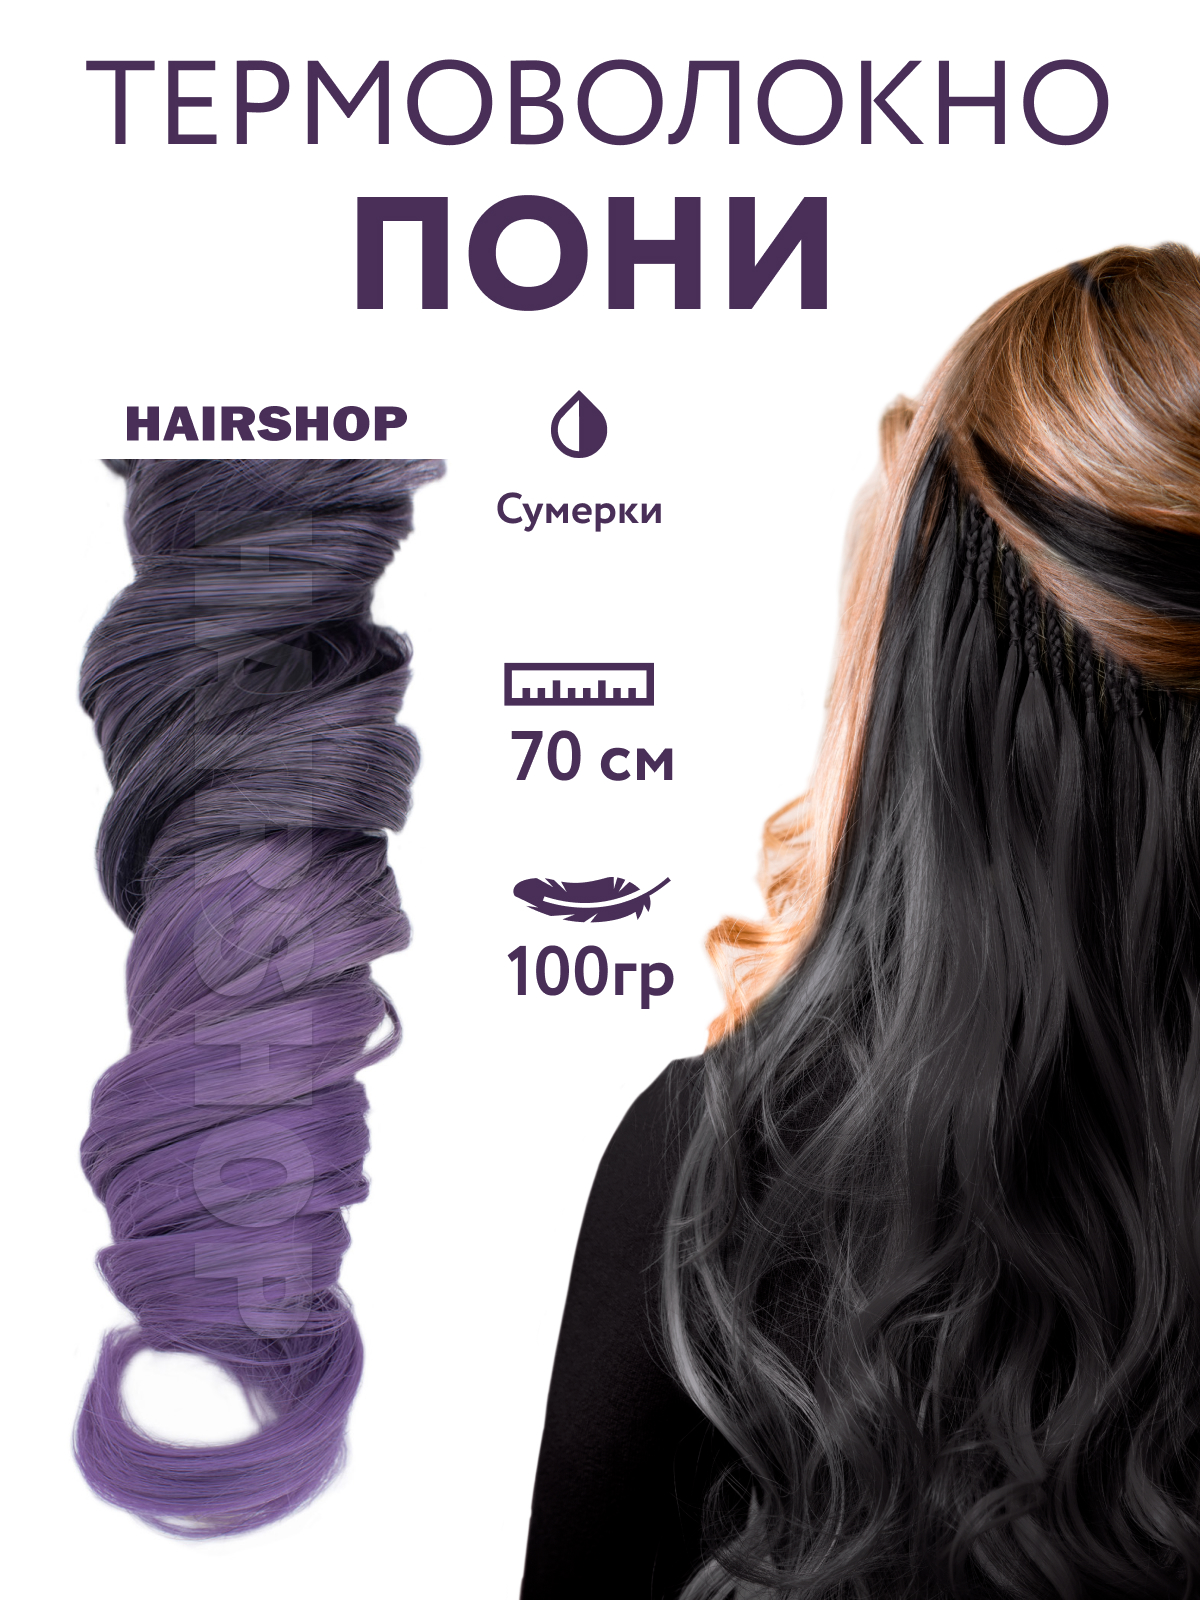 Канекалон Hairshop Пони HairUp для точечного афронаращивания Сумерки 1,4м сумерки европы